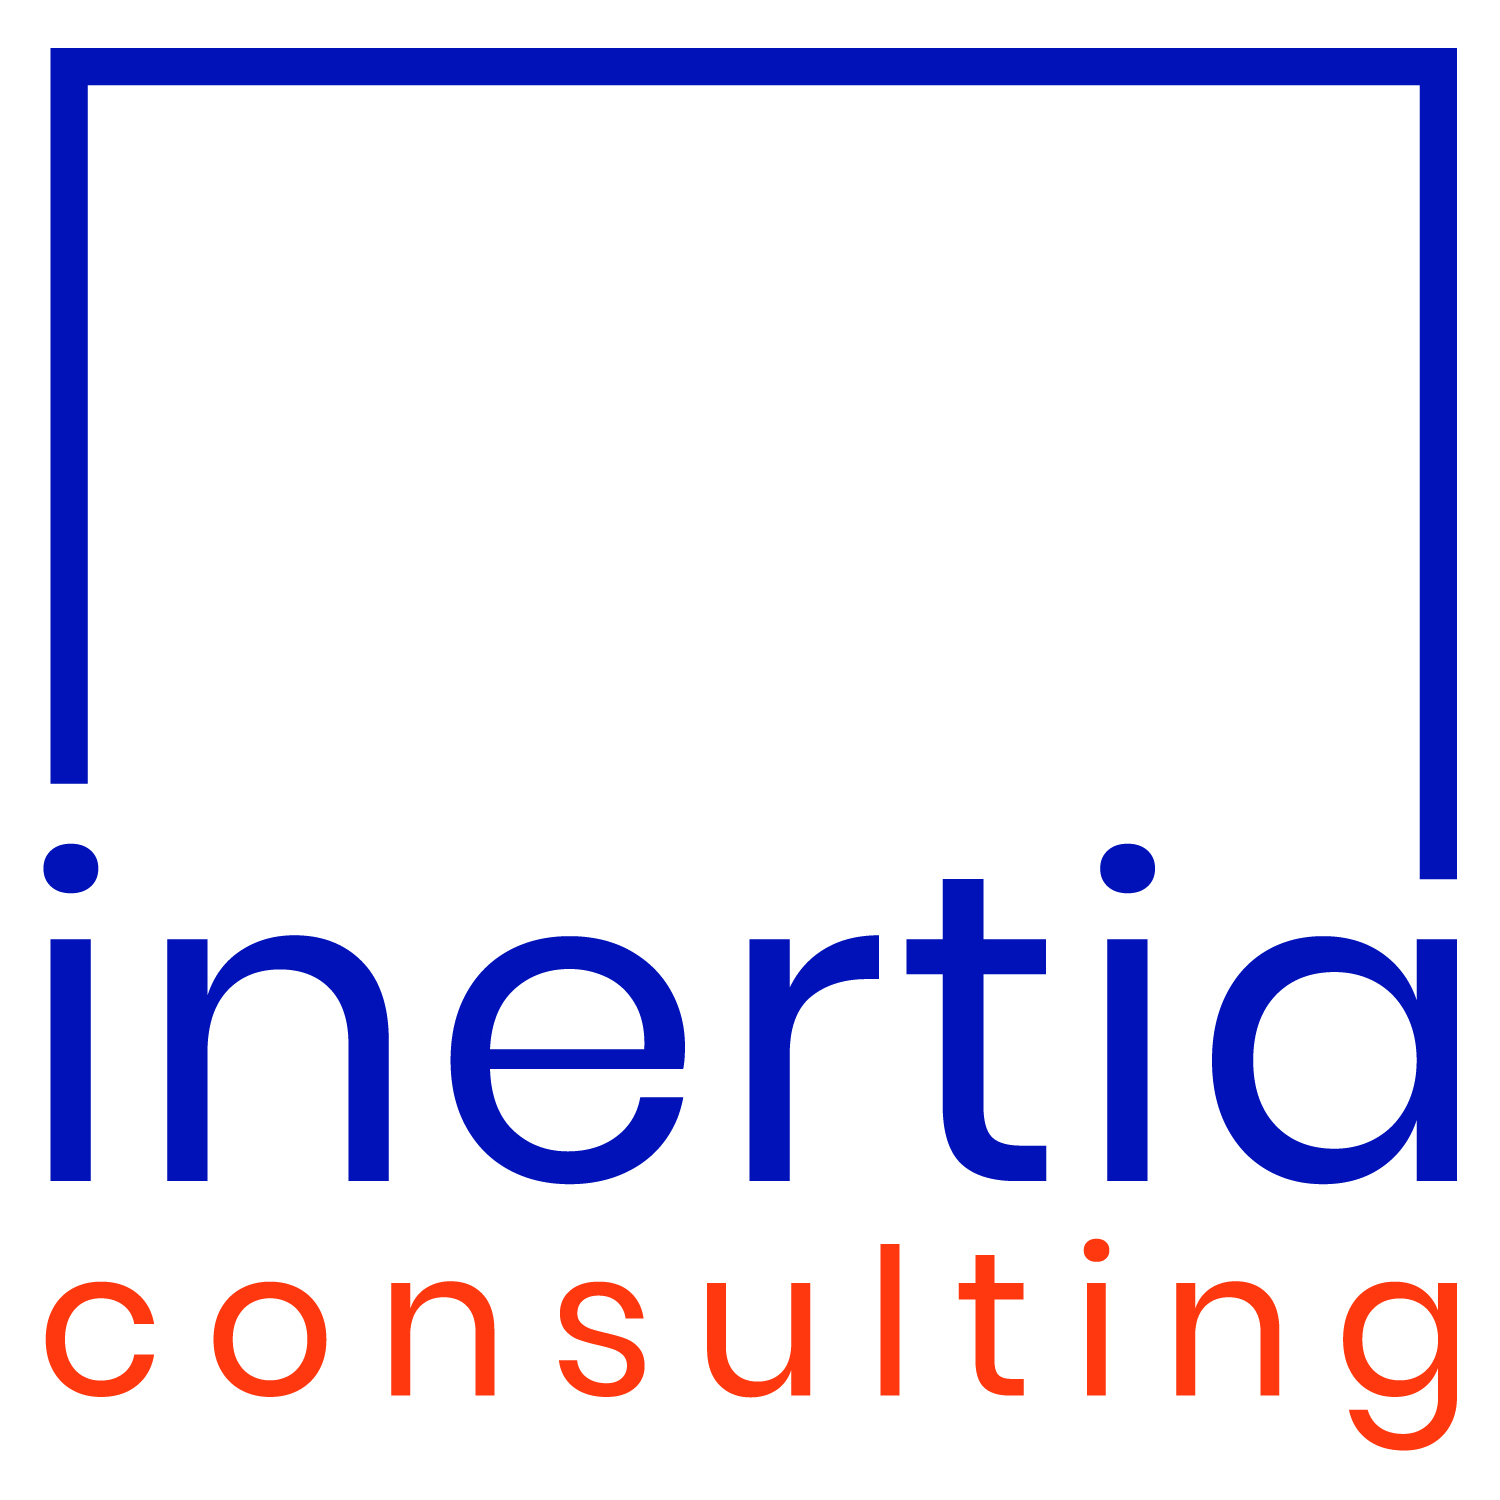 Inertia Consulting Company Presentation